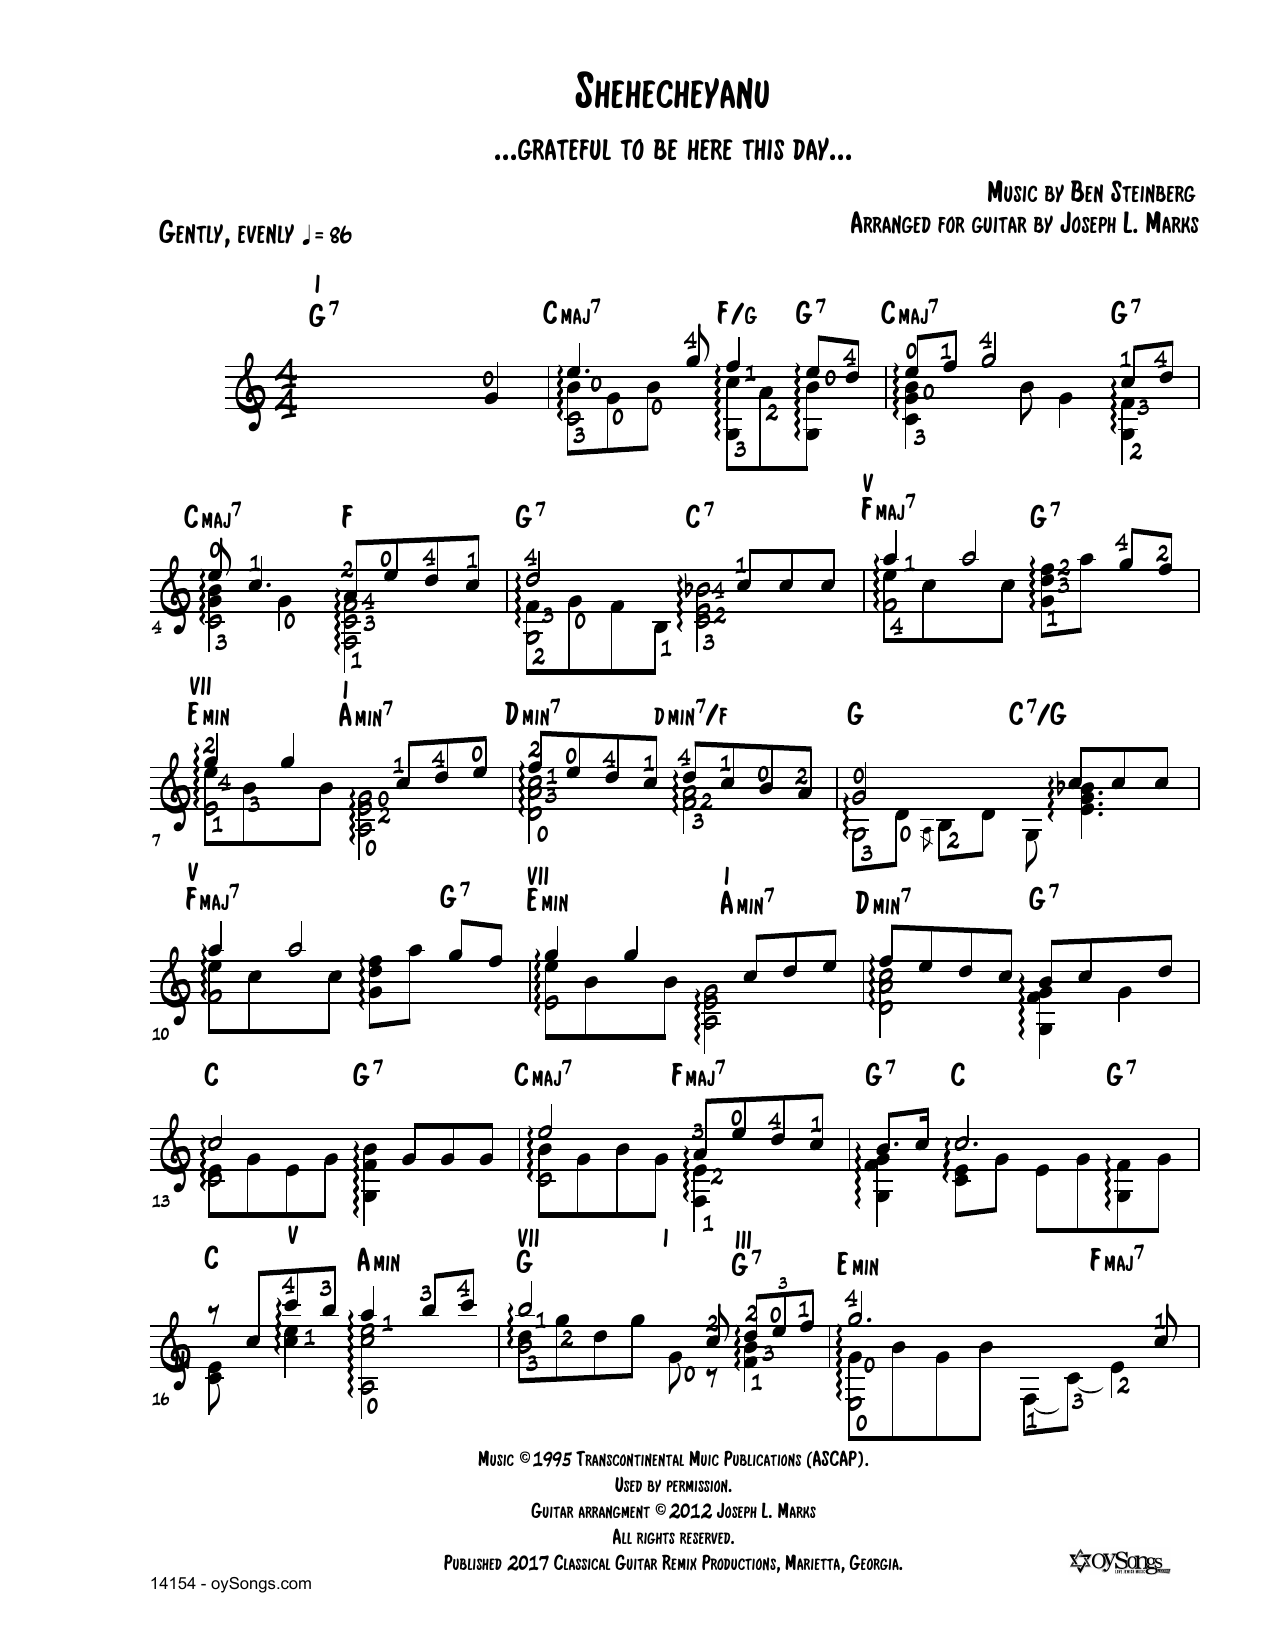 Shehecheyanu (arr. Joe Marks) sheet music